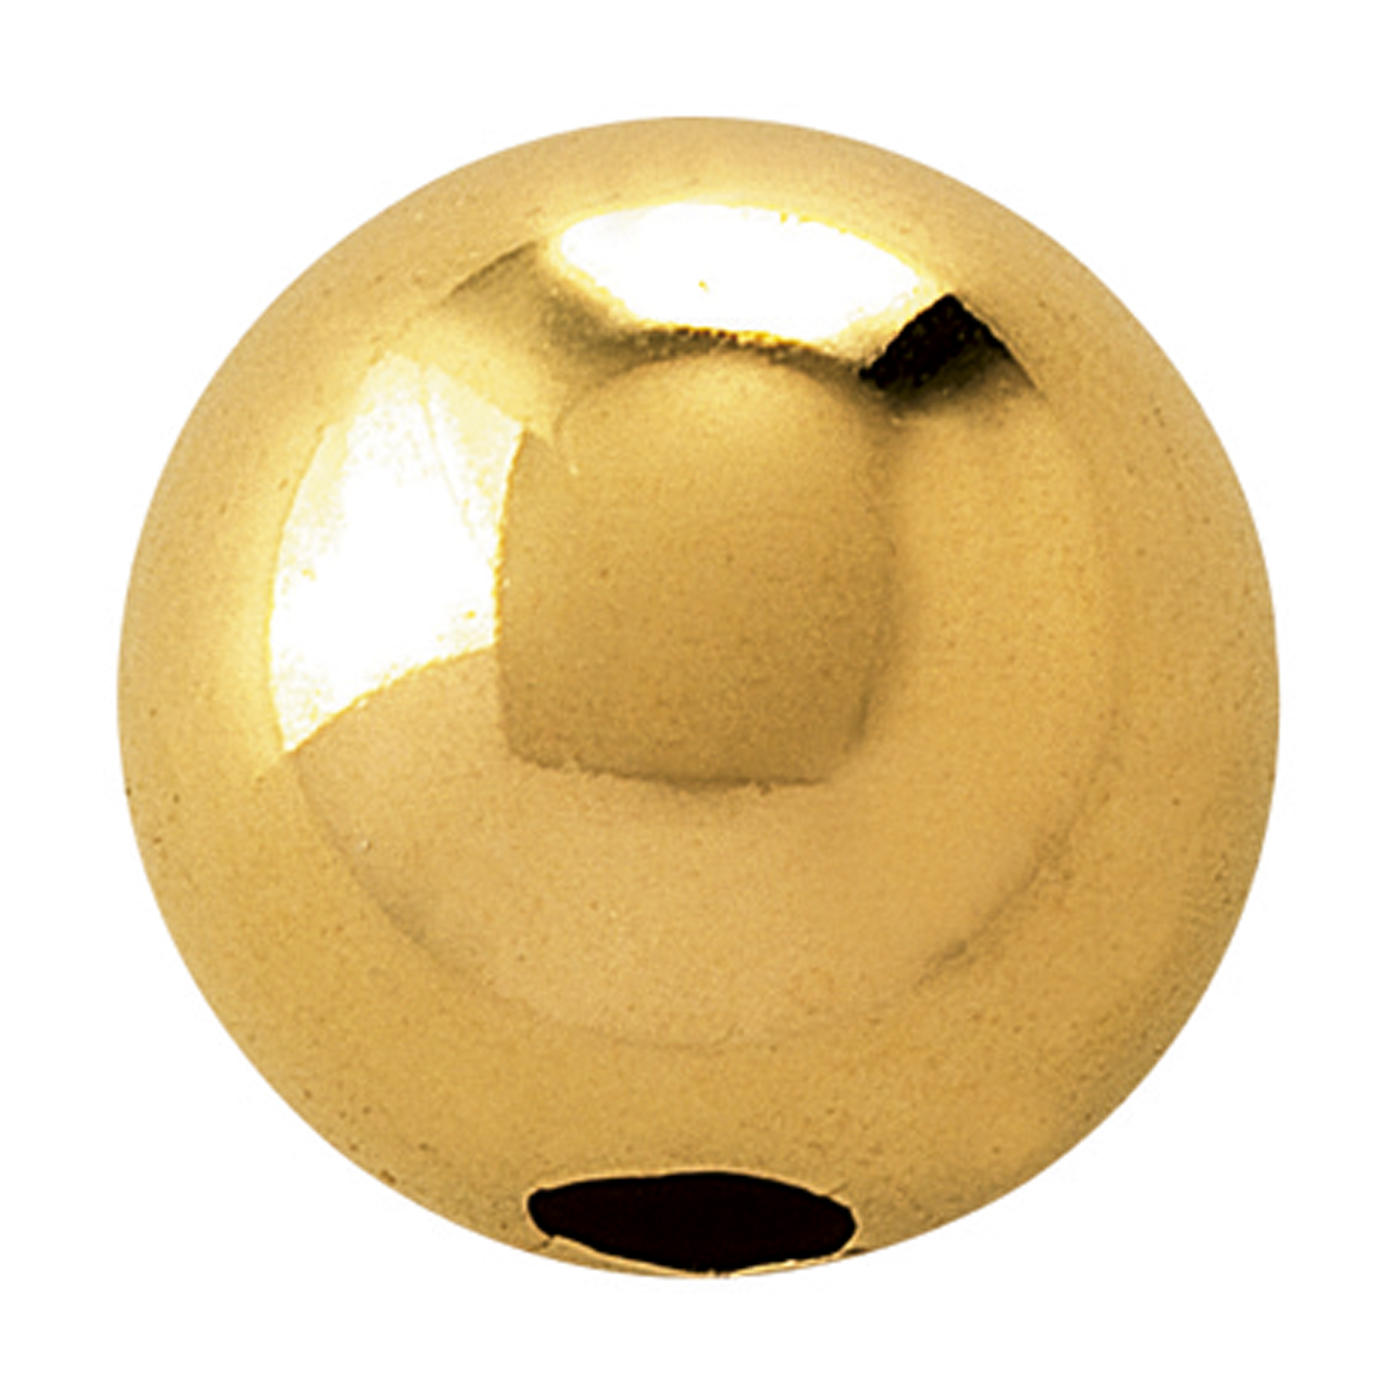 2-Hole Ball, 750G Polished, ø 8 mm - 1 piece